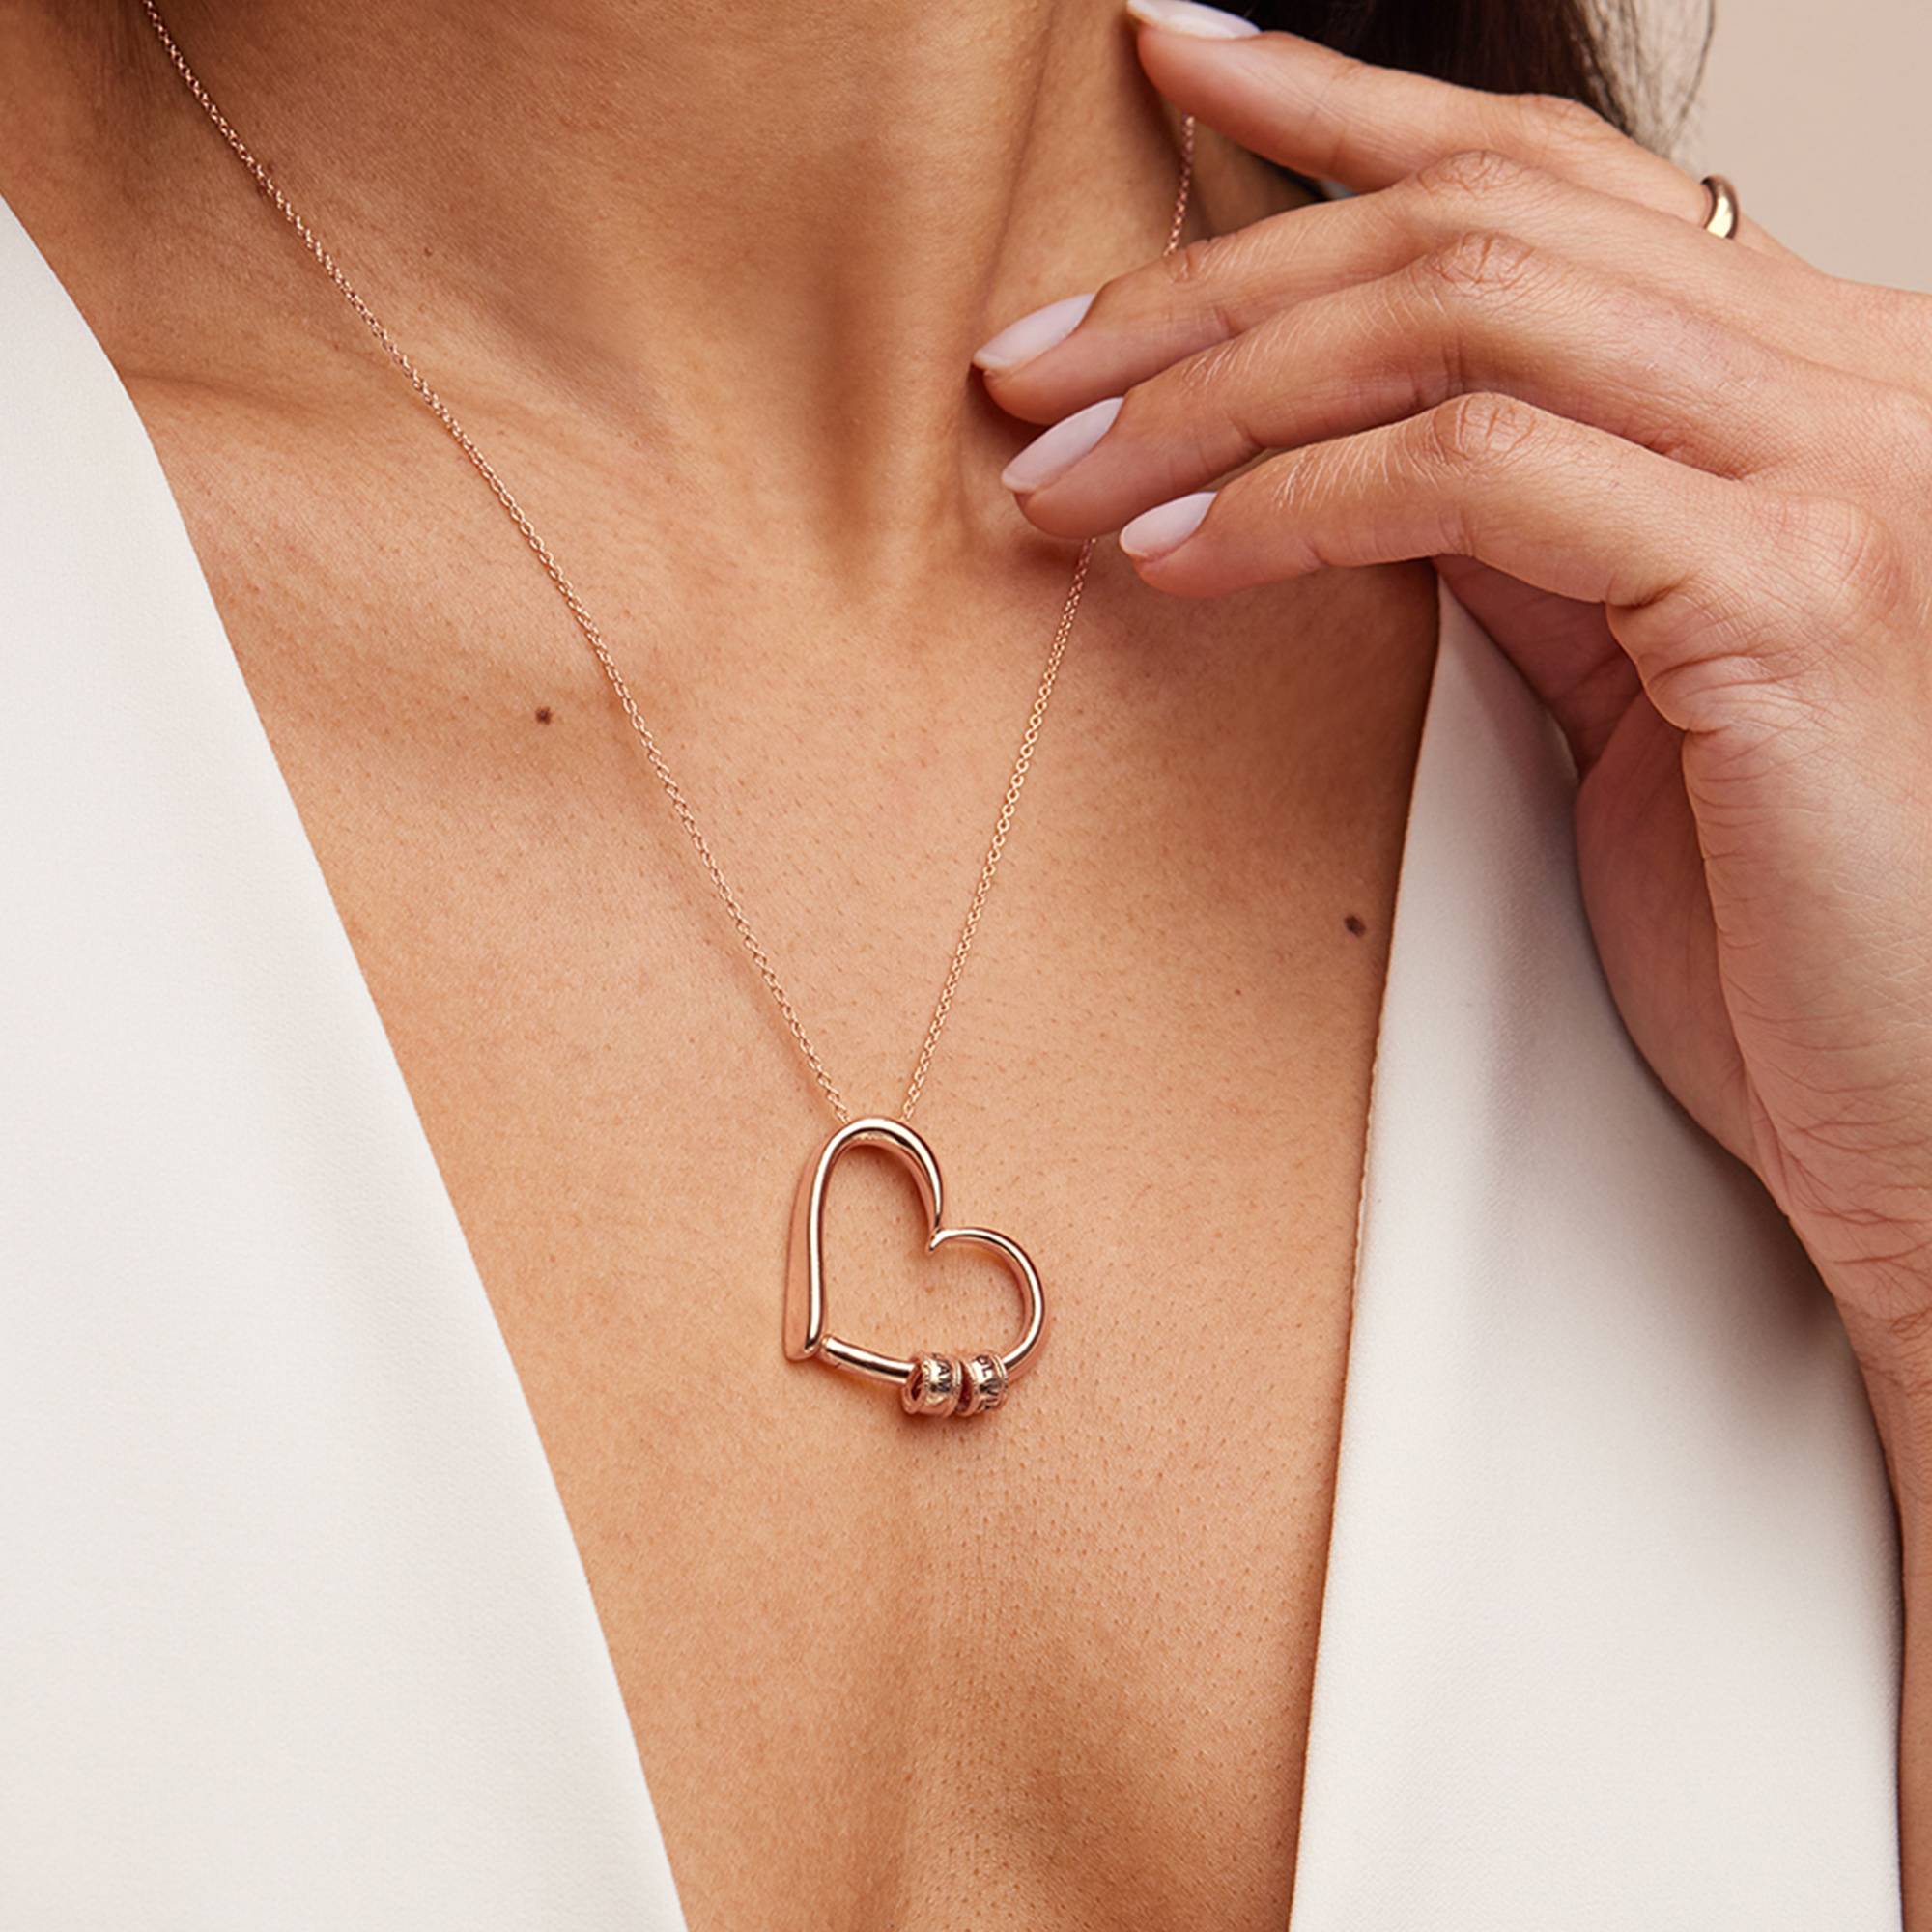 Collar "Charming Heart" con Perlas Grabadas en Oro Rosa Vermeil-5 foto de producto